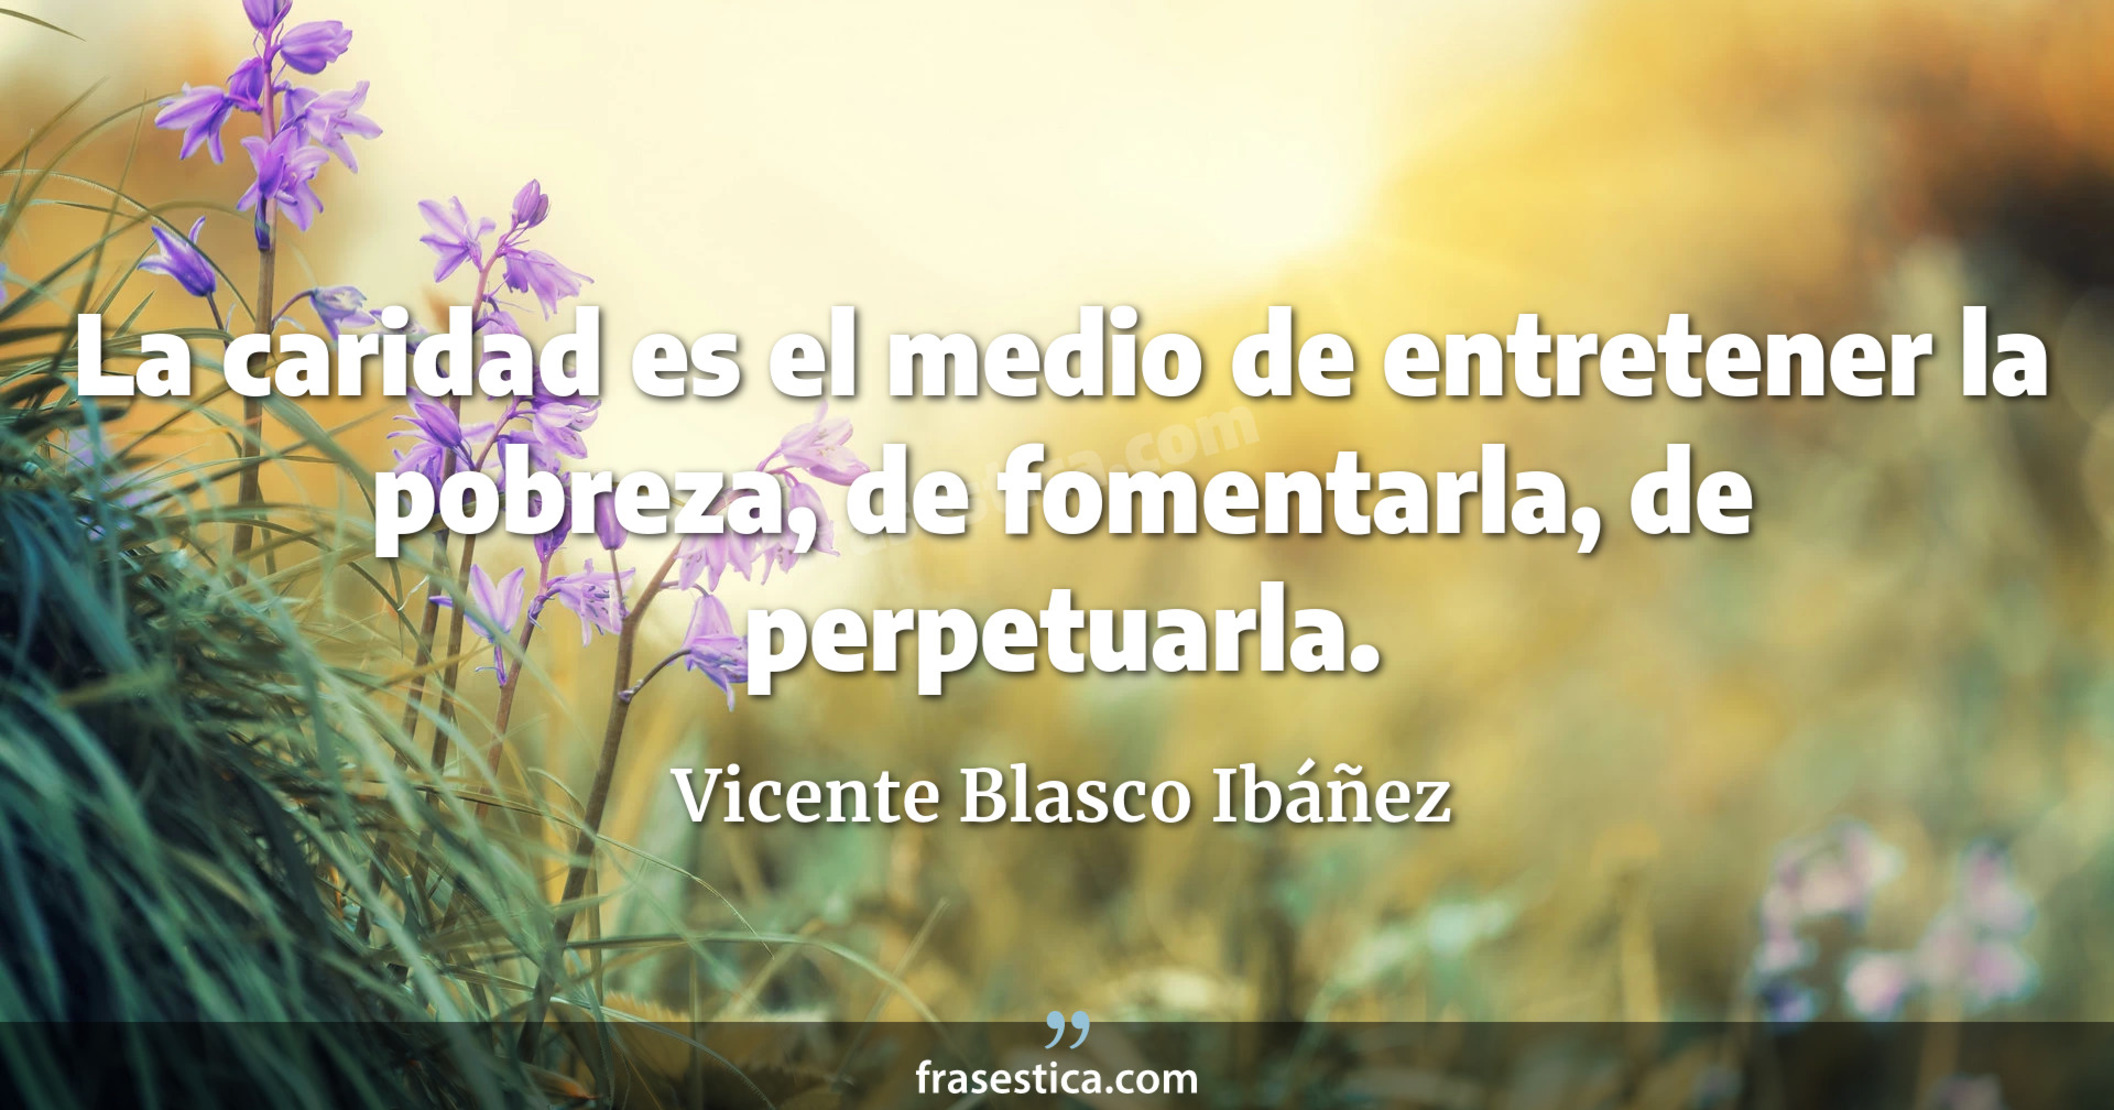 La caridad es el medio de entretener la pobreza, de fomentarla, de perpetuarla. - Vicente Blasco Ibáñez